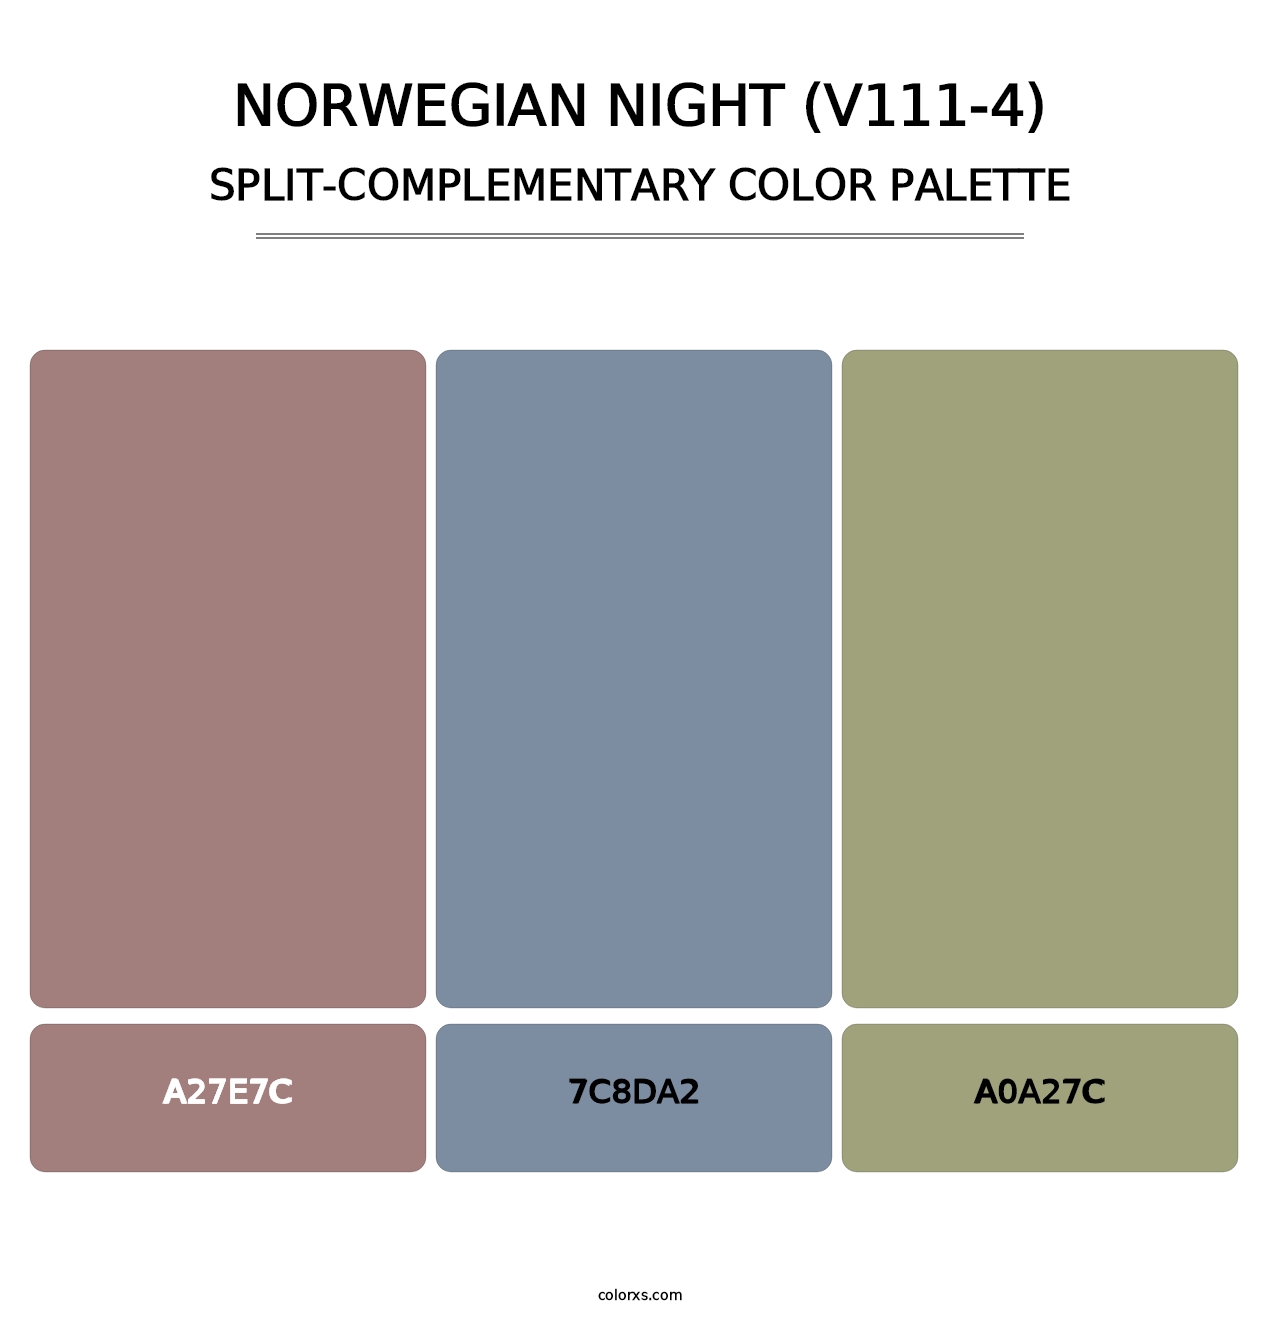 Norwegian Night (V111-4) - Split-Complementary Color Palette